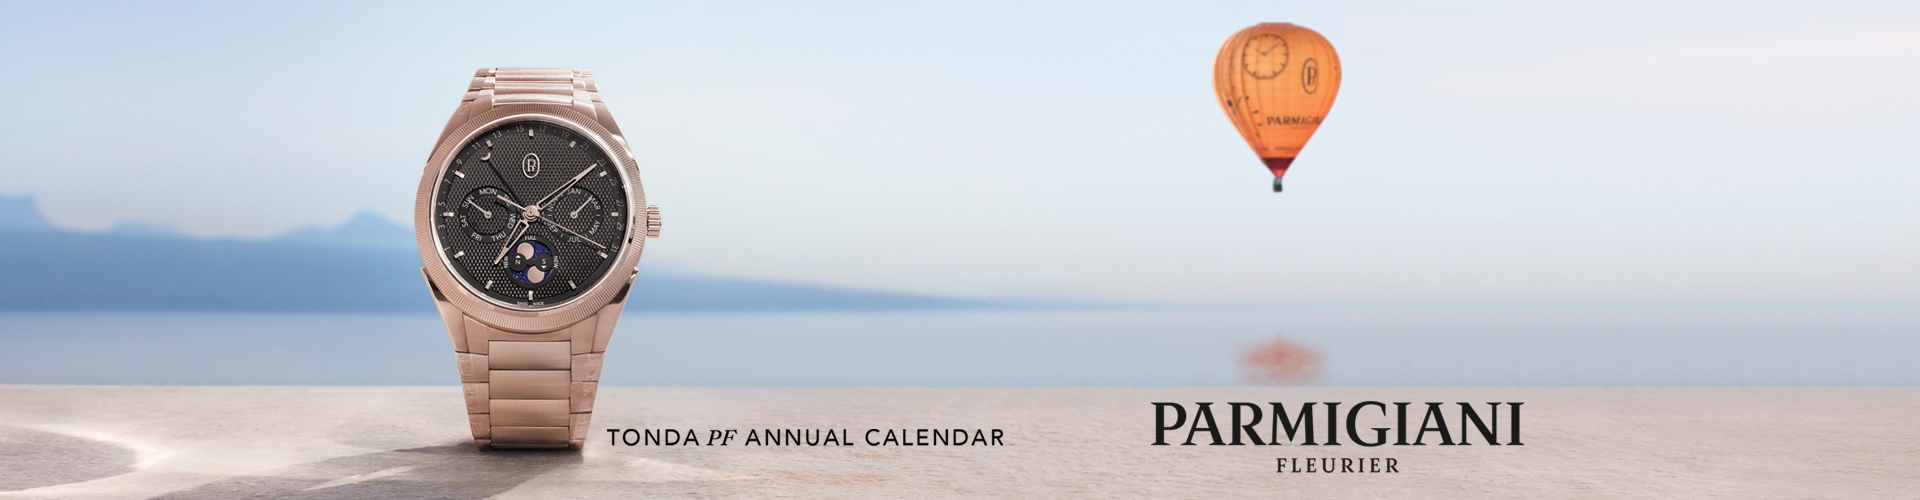 Parmigiani Tonda PF Annual Calendar